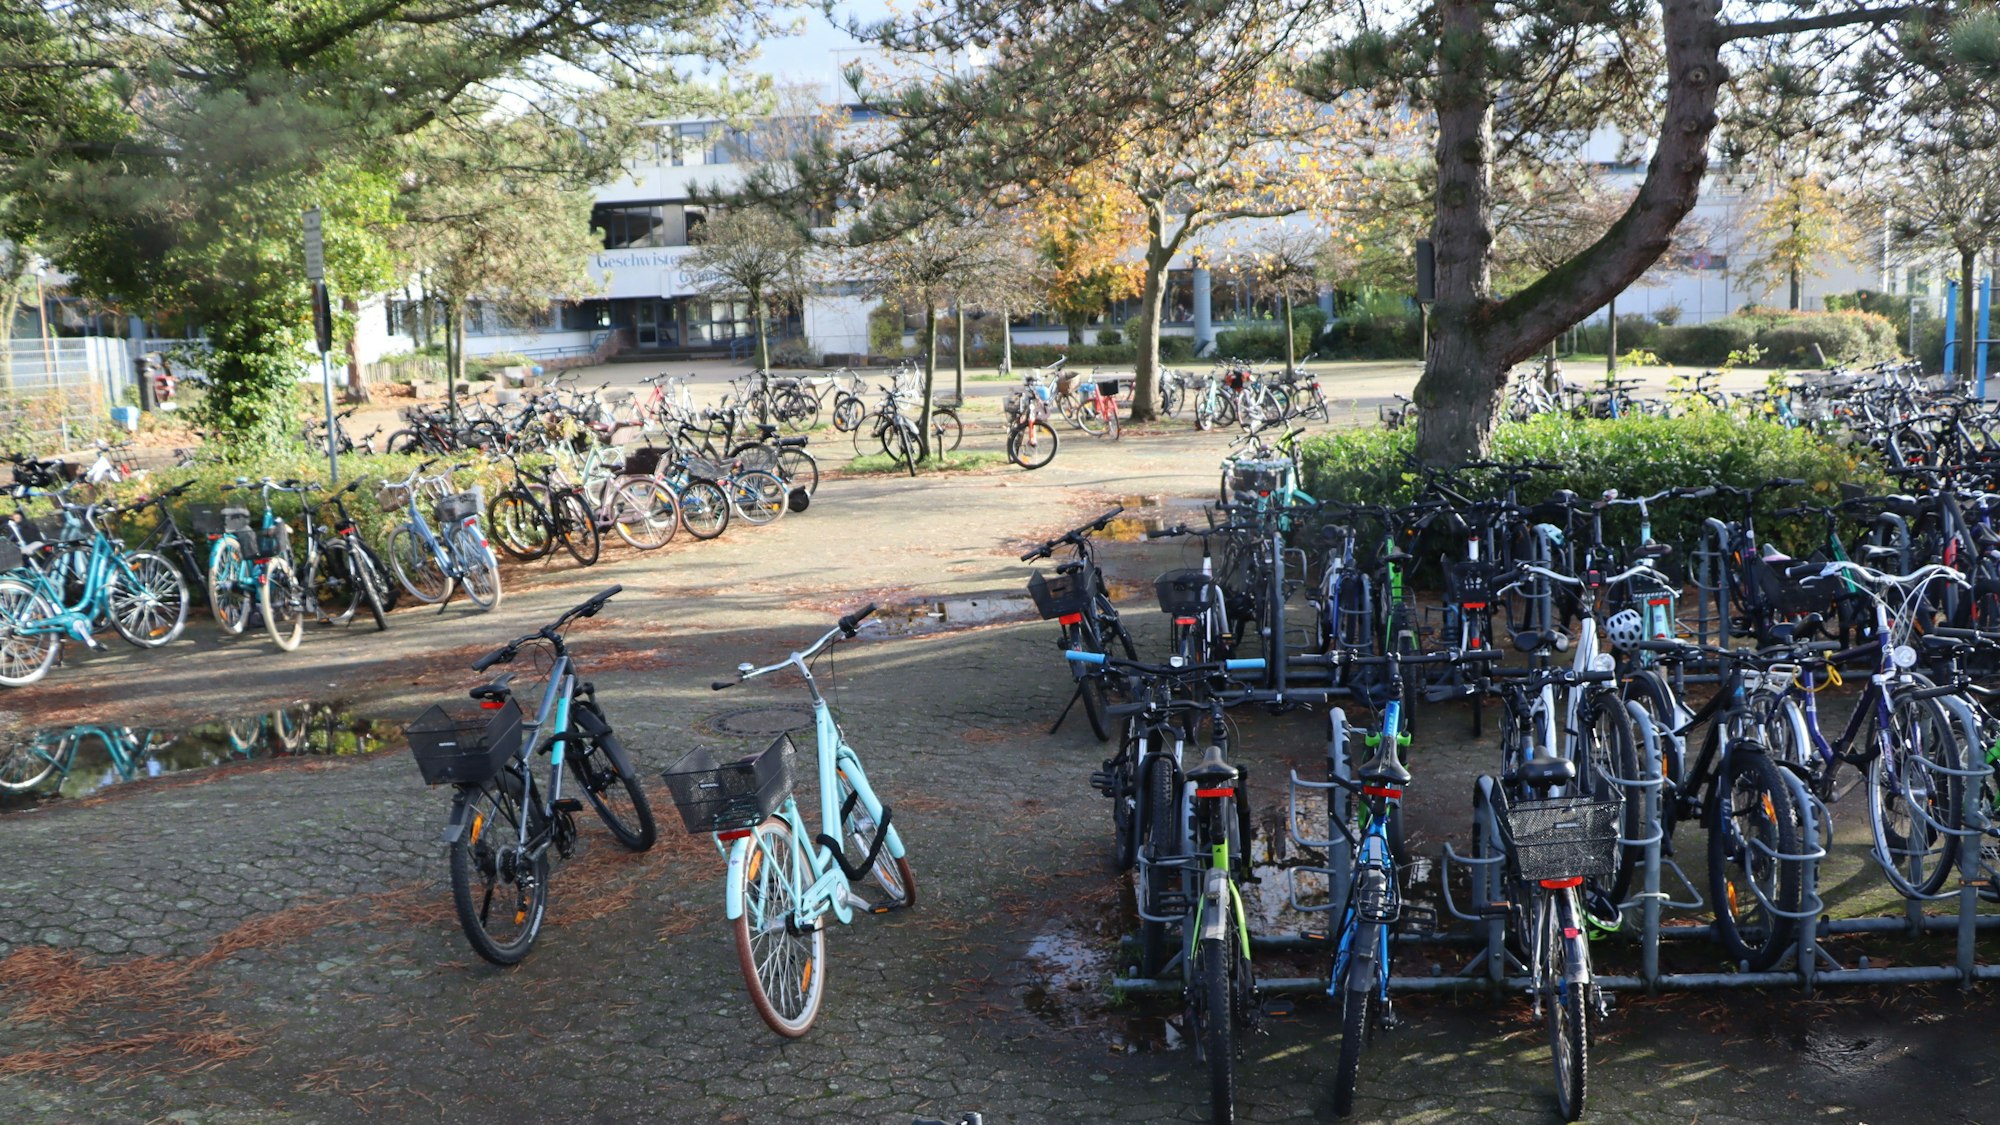 Auf dem Foto ist eine große Zahl Fahrräder zu sehen, die am Gymnasium abgestellt sind.